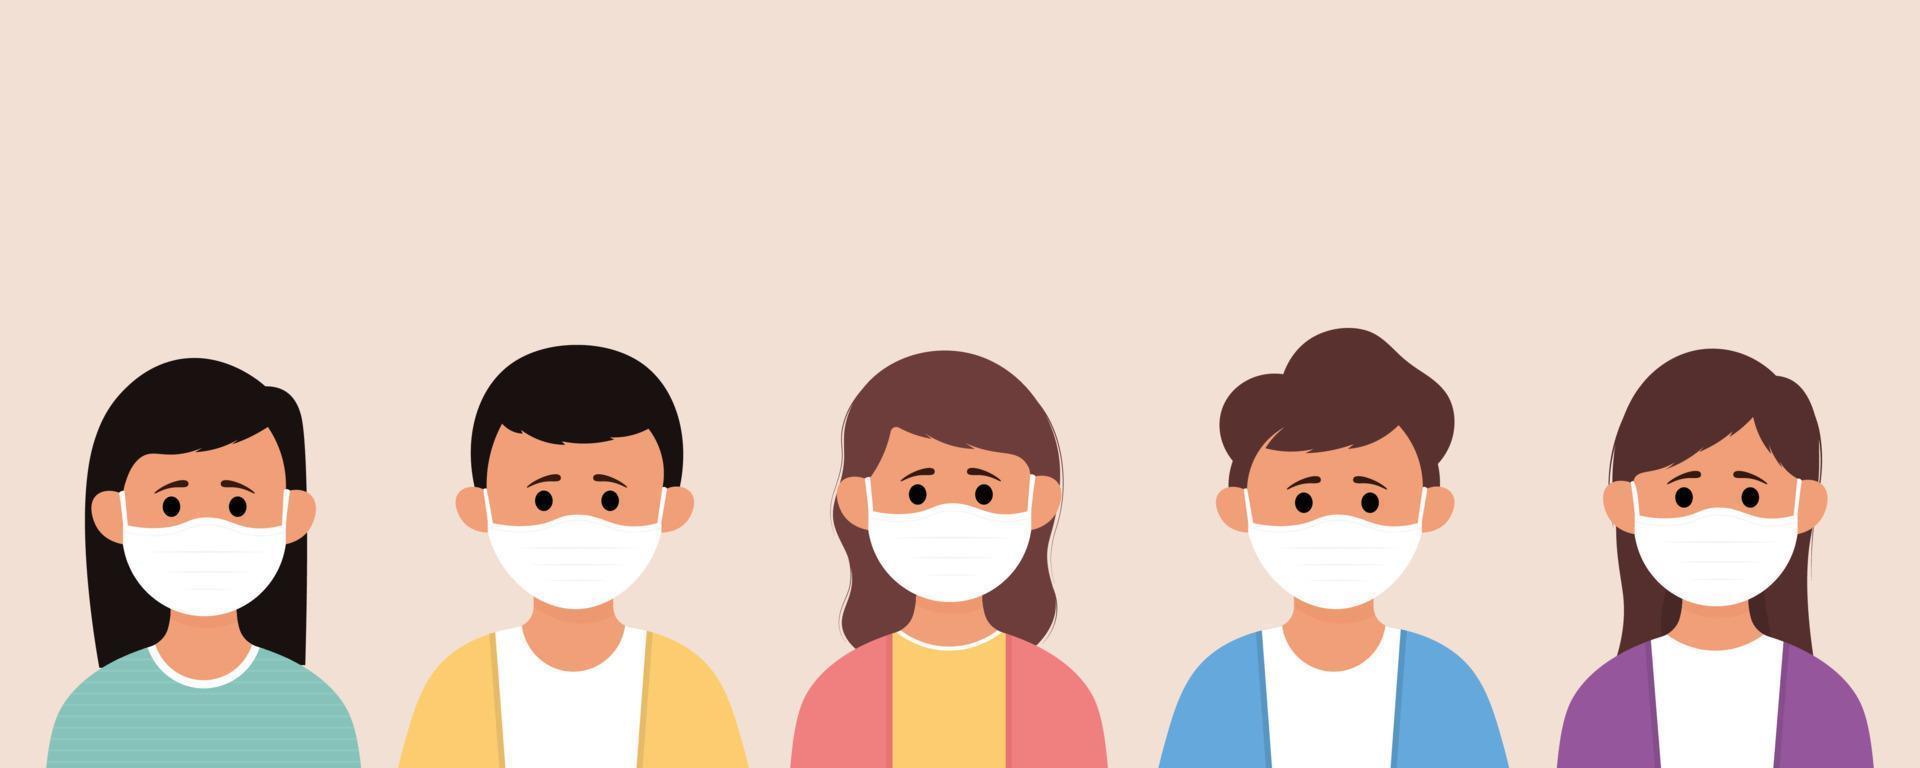 groupe d'enfants portant un masque médical pour prévenir les maladies, la grippe, la pollution de l'air, l'air contaminé, la pollution mondiale vecteur